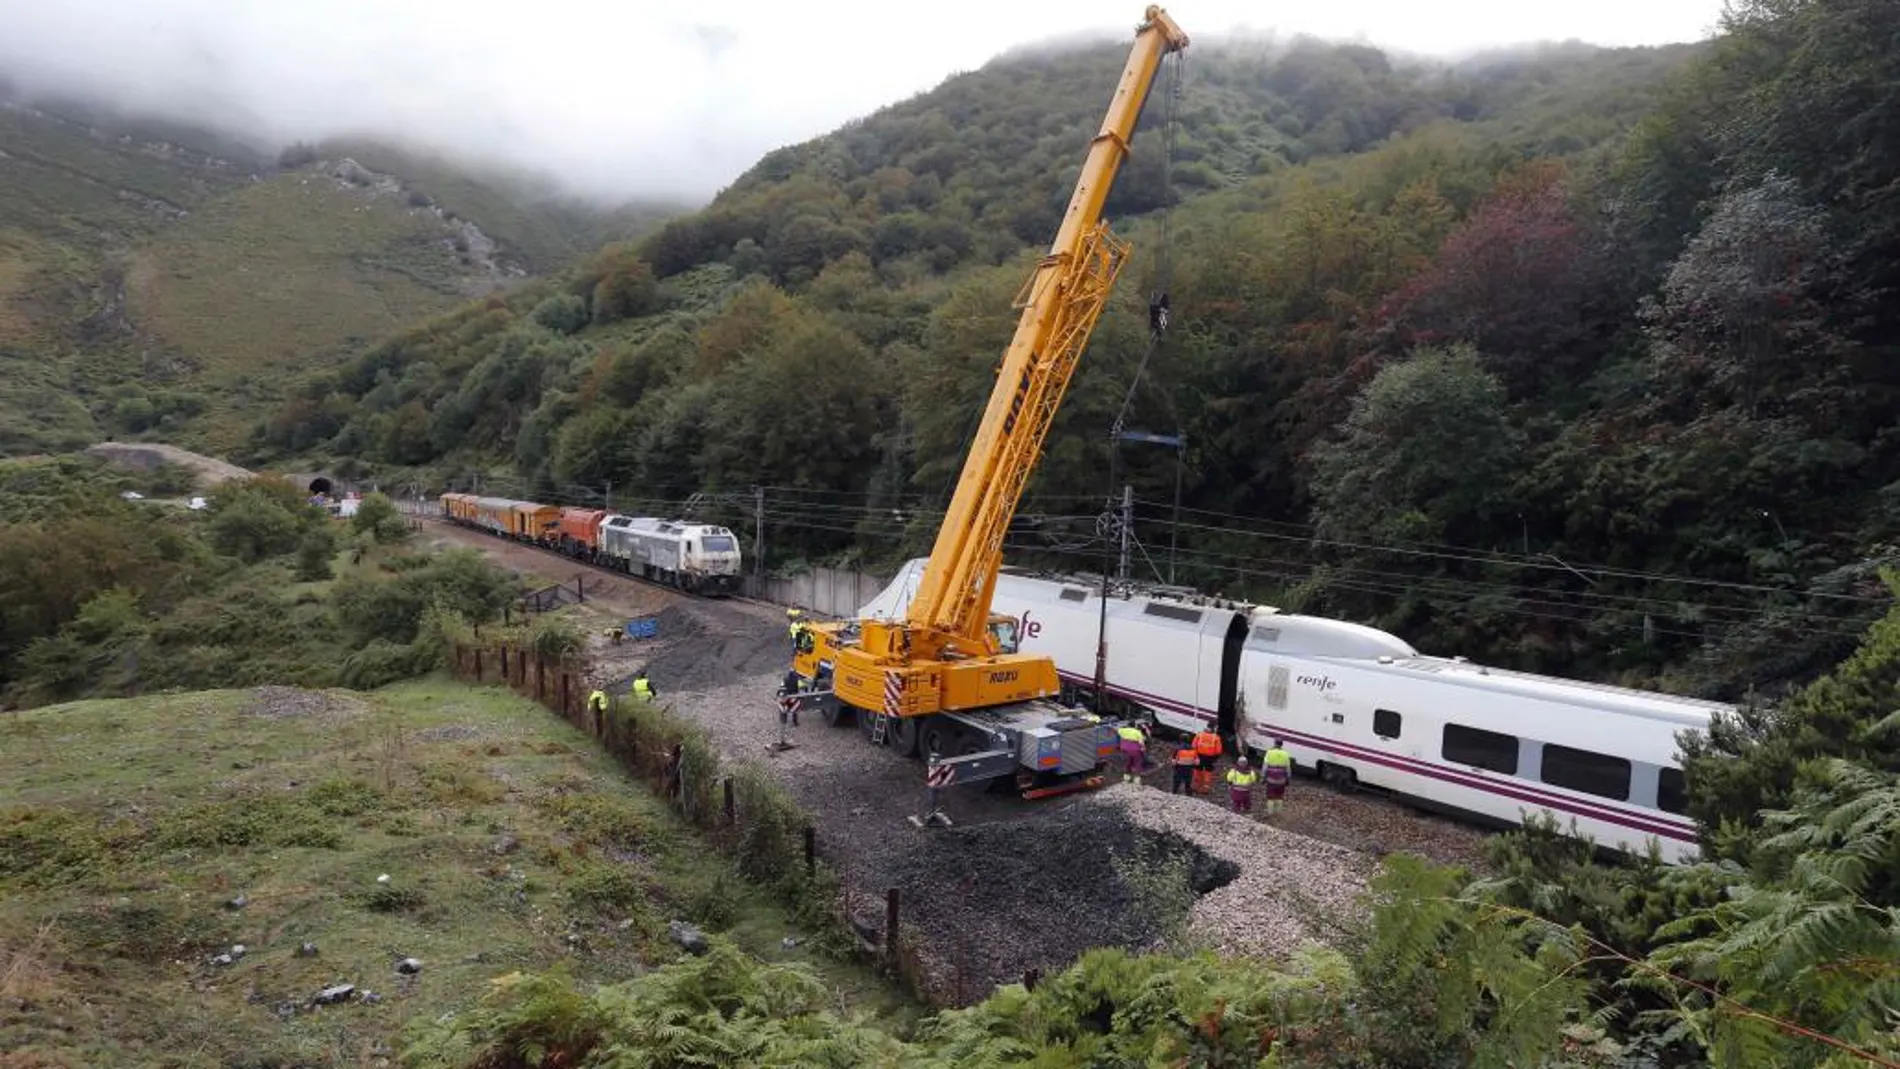 Trabajos para restablecer el servicio ferroviario entre León y Asturias, cortado desde la pasada noche por el descarrilamiento de un tren Alvia.